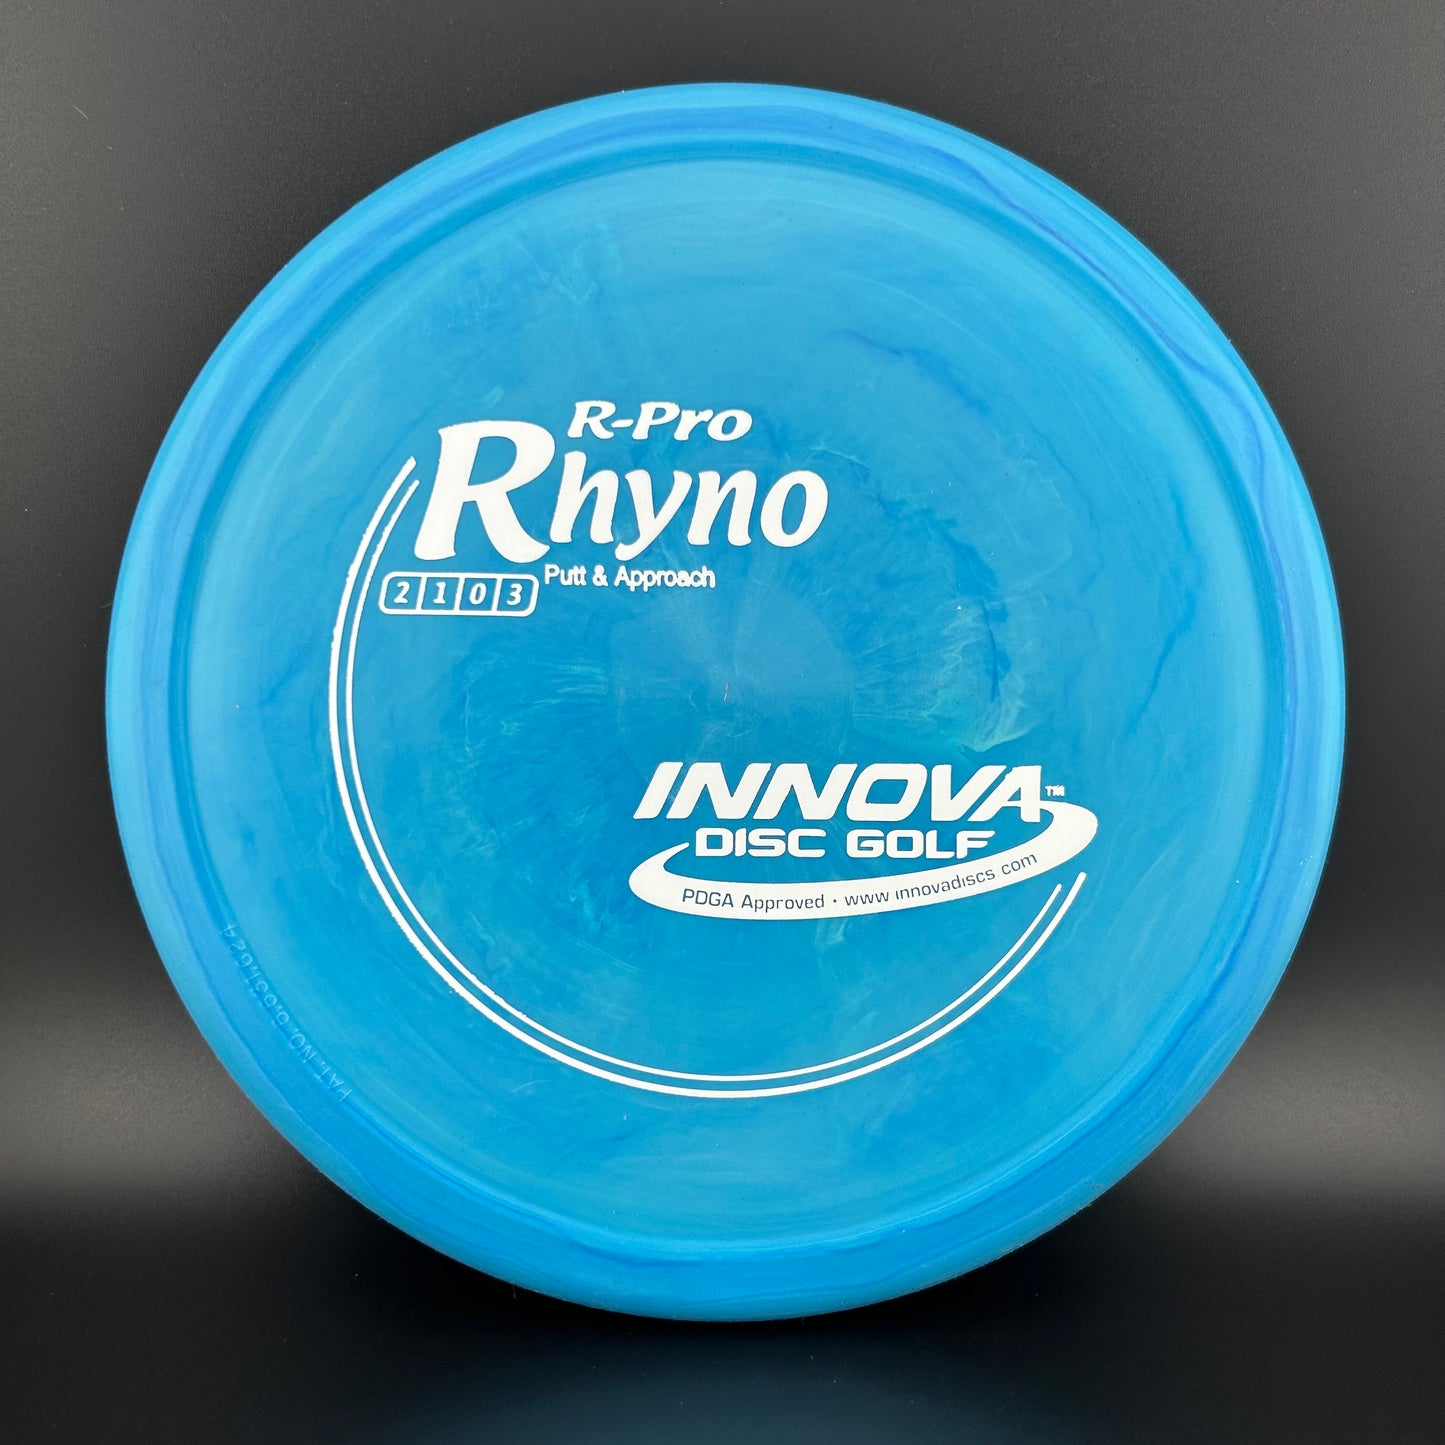 R-Pro Rhyno Innova